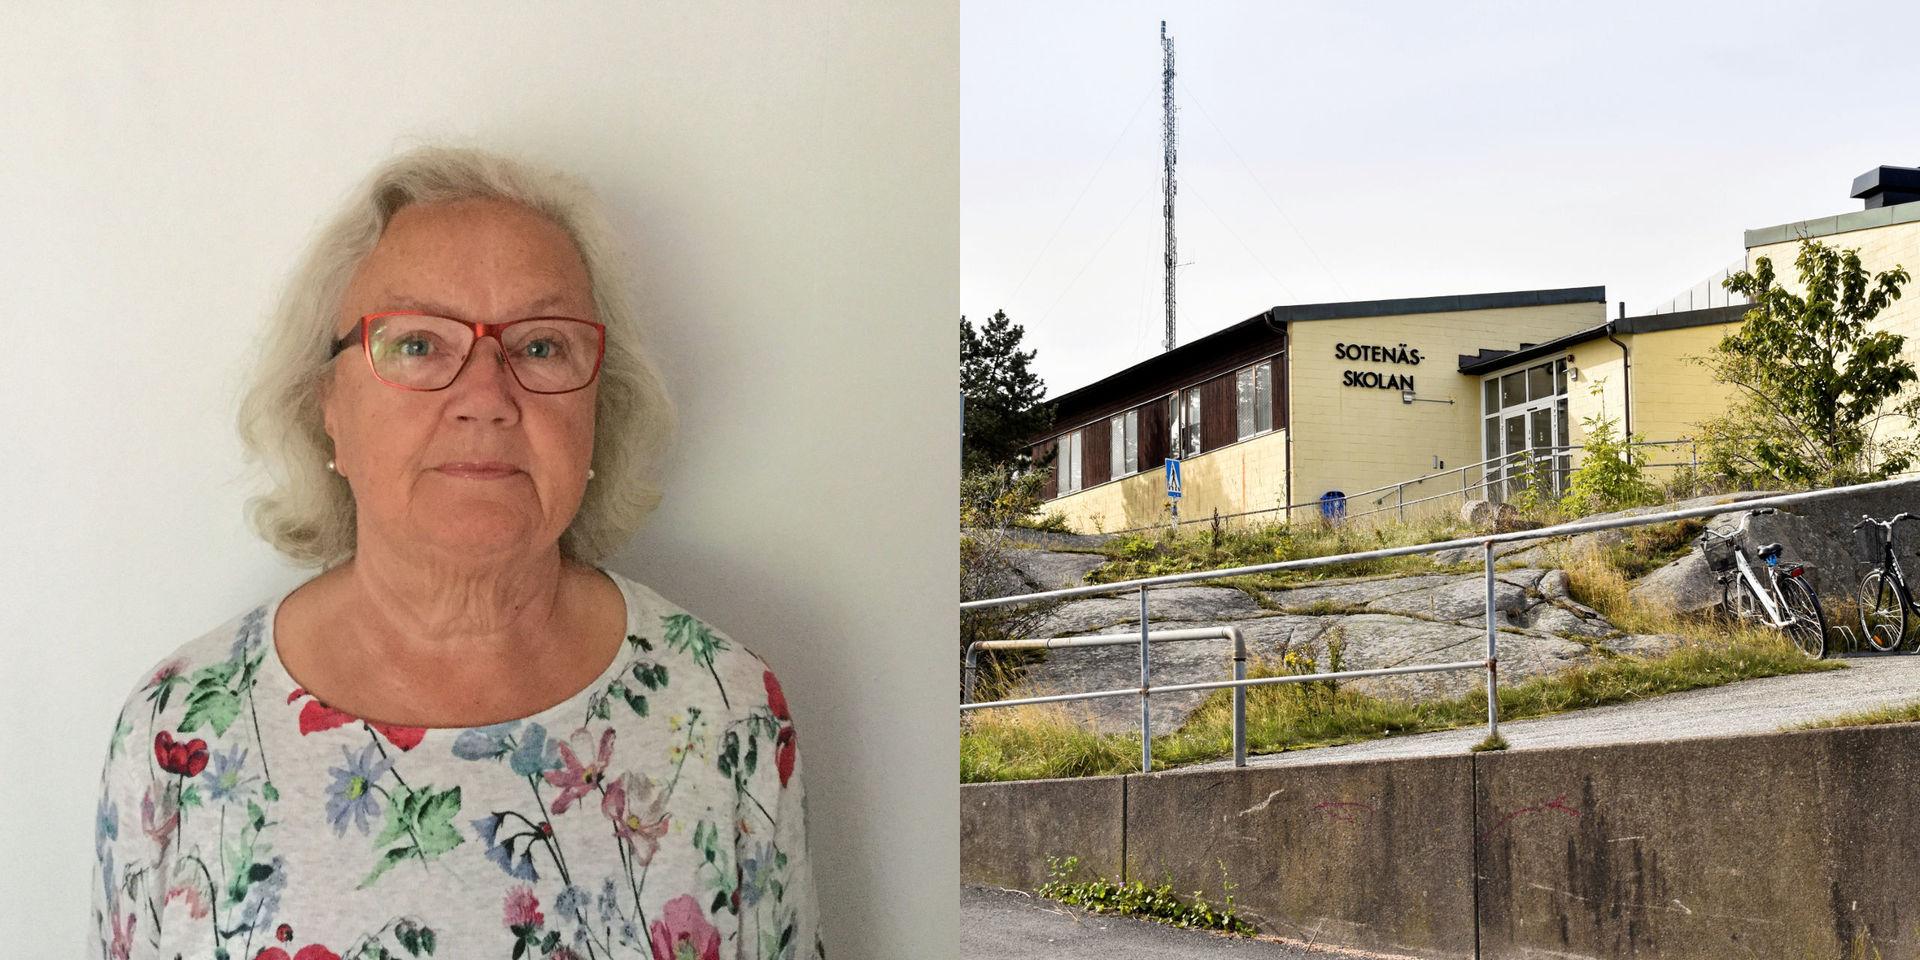 Socialdemokraterna i Sotenäs vill veta vad en skola i södra delen av kommunen kostar. Kravet förs fram i en motion som skrivits under av bland annat oppositionsrådet Birgitta Albertsson (S).